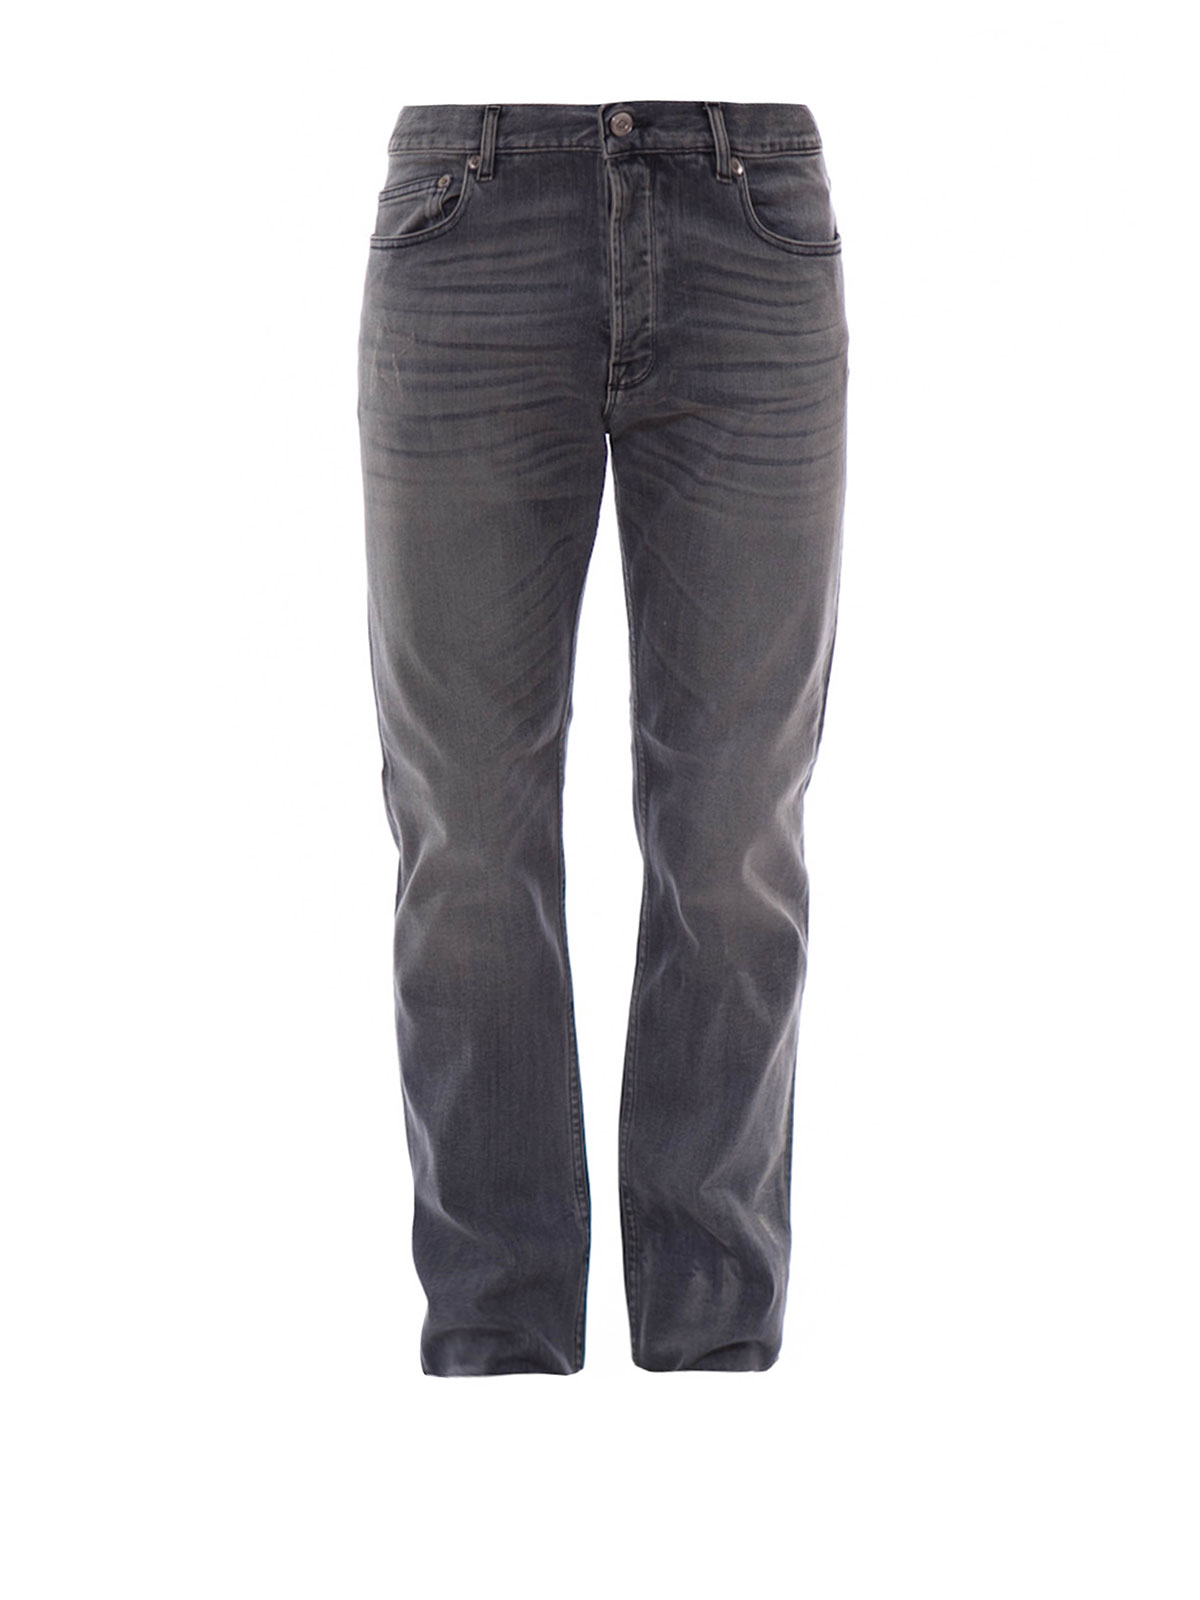 Jeans Golden Goose - Jeans Boot-Cut Grises Para Hombre - G28MP704C5